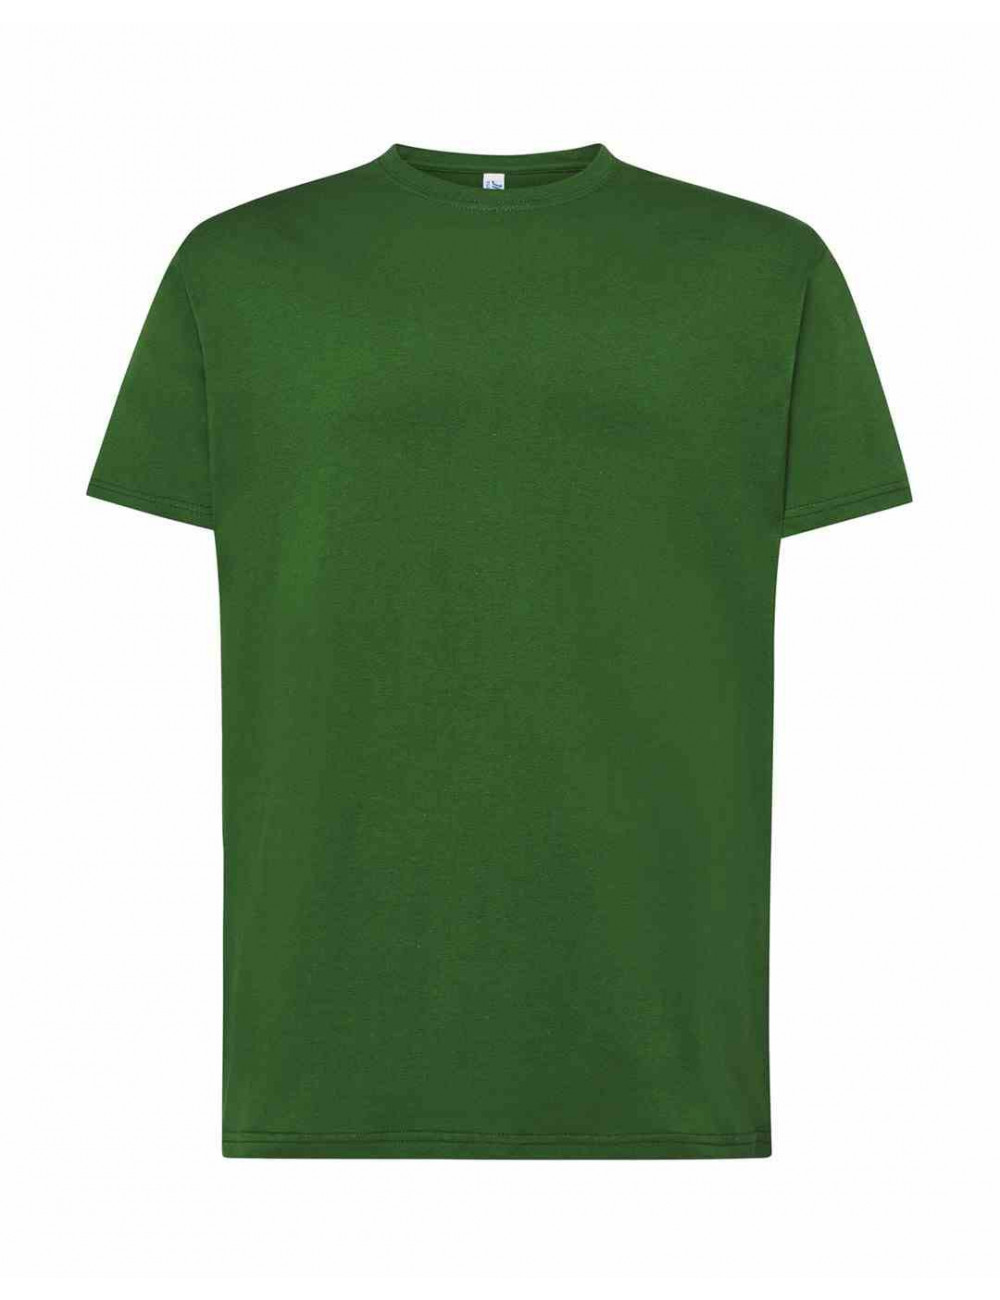 Koszulka męska tsra 150 regular t-shirt bg - bottle green Jhk